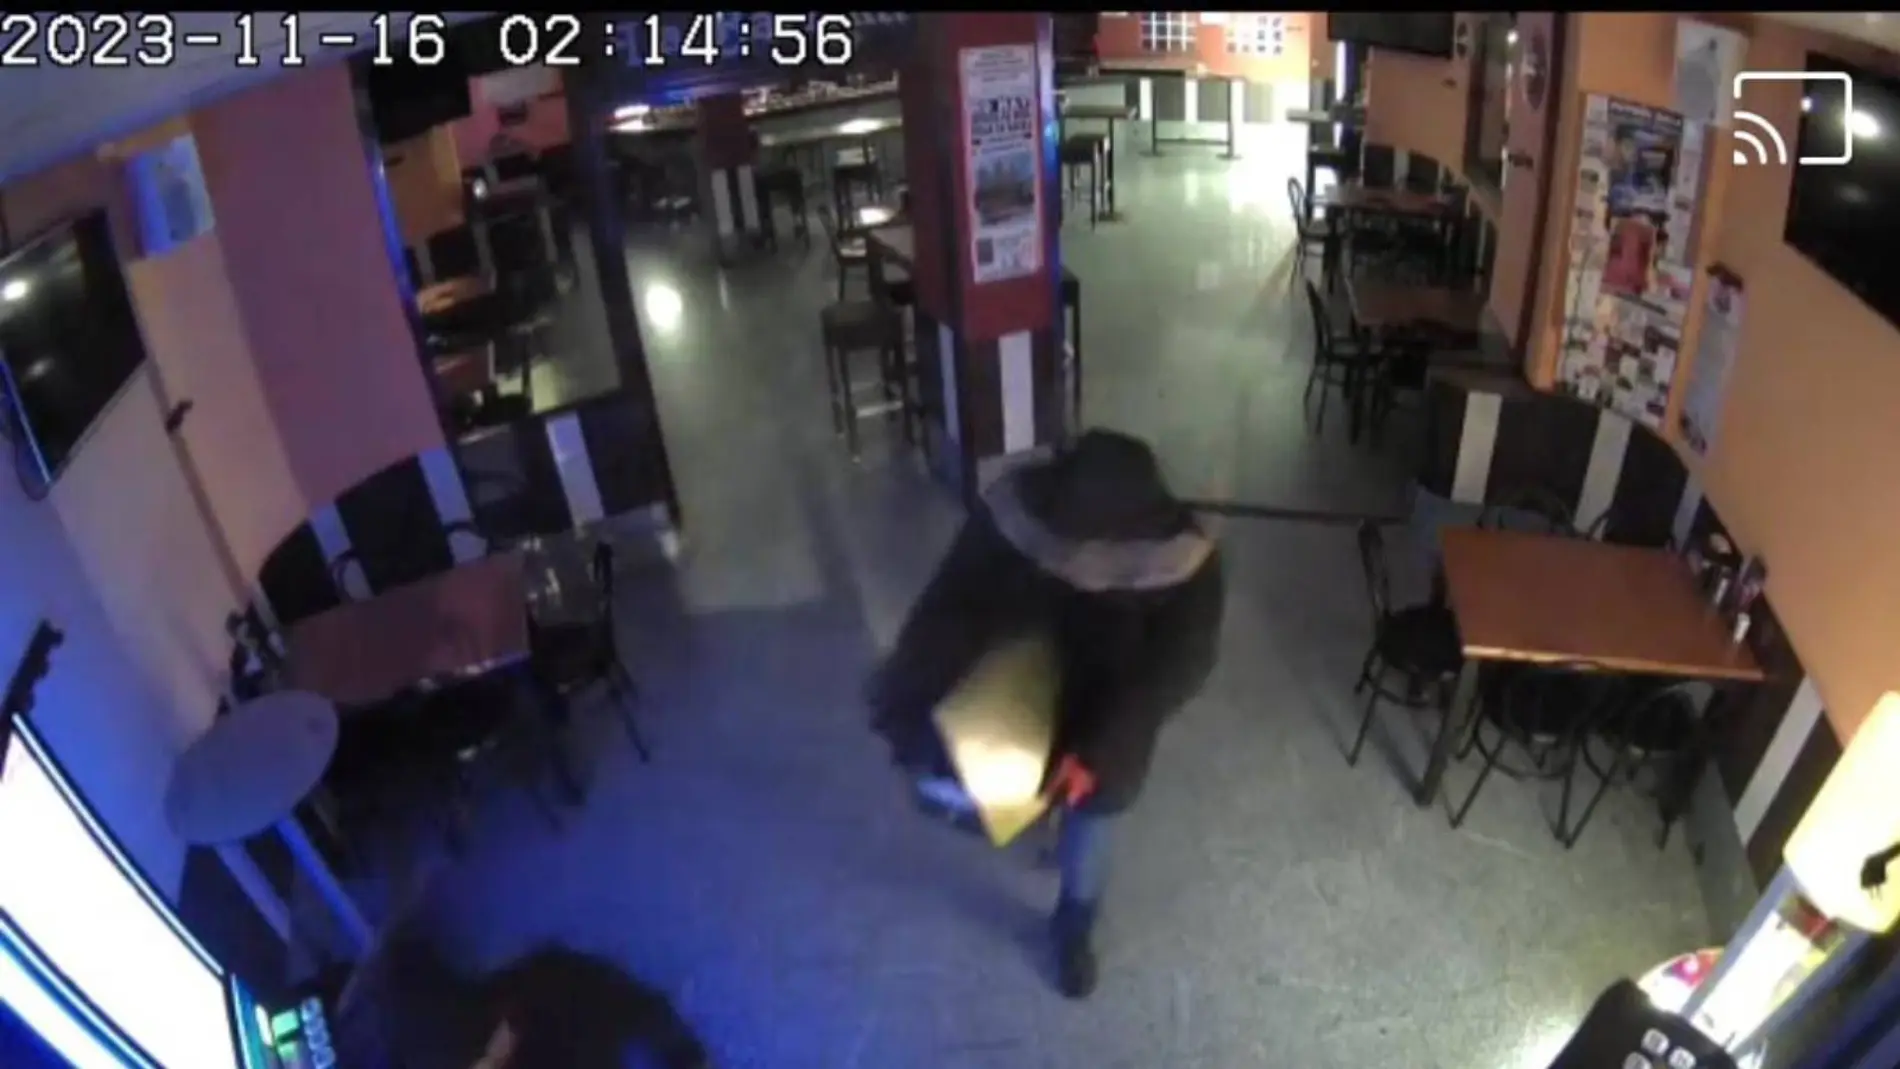 Una imagen de las cámaras de seguridad del bar La Barrika (Navalmoral, Cáceres), donde robaron una máquina expendedora de Lotería de Navidad